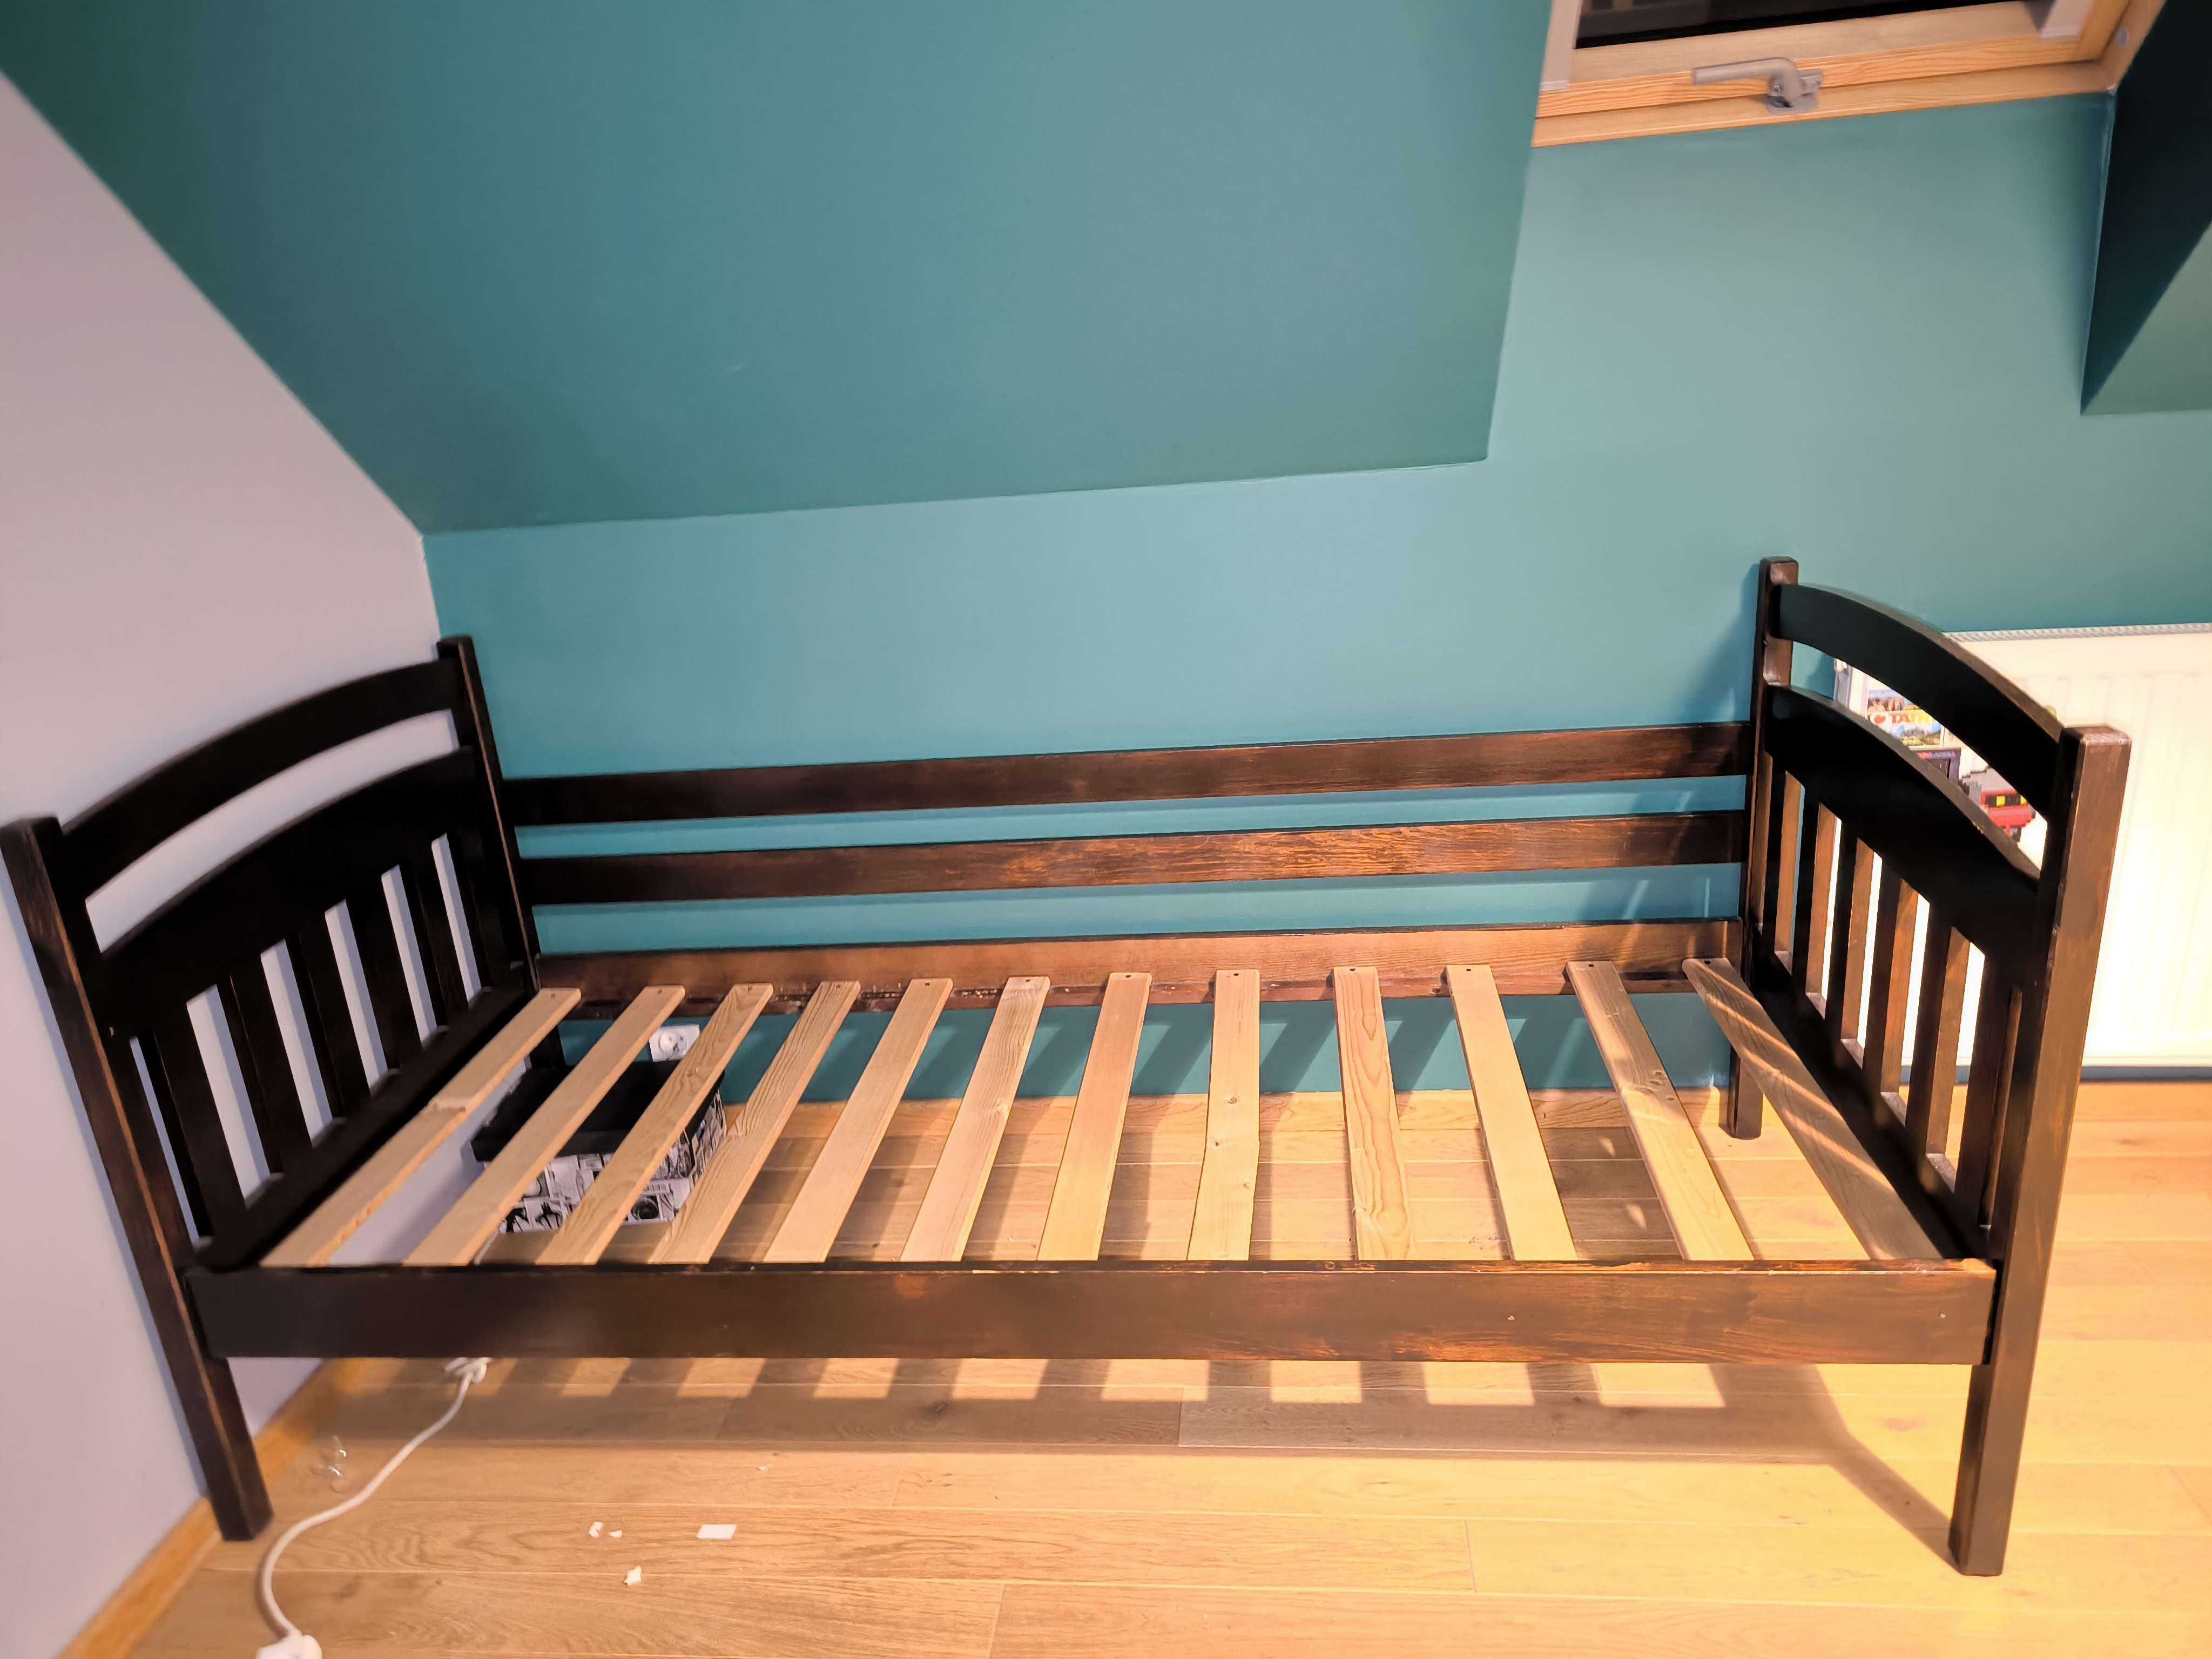 Drewniane łóżko 187cm dlugosc 86cm szerokosc